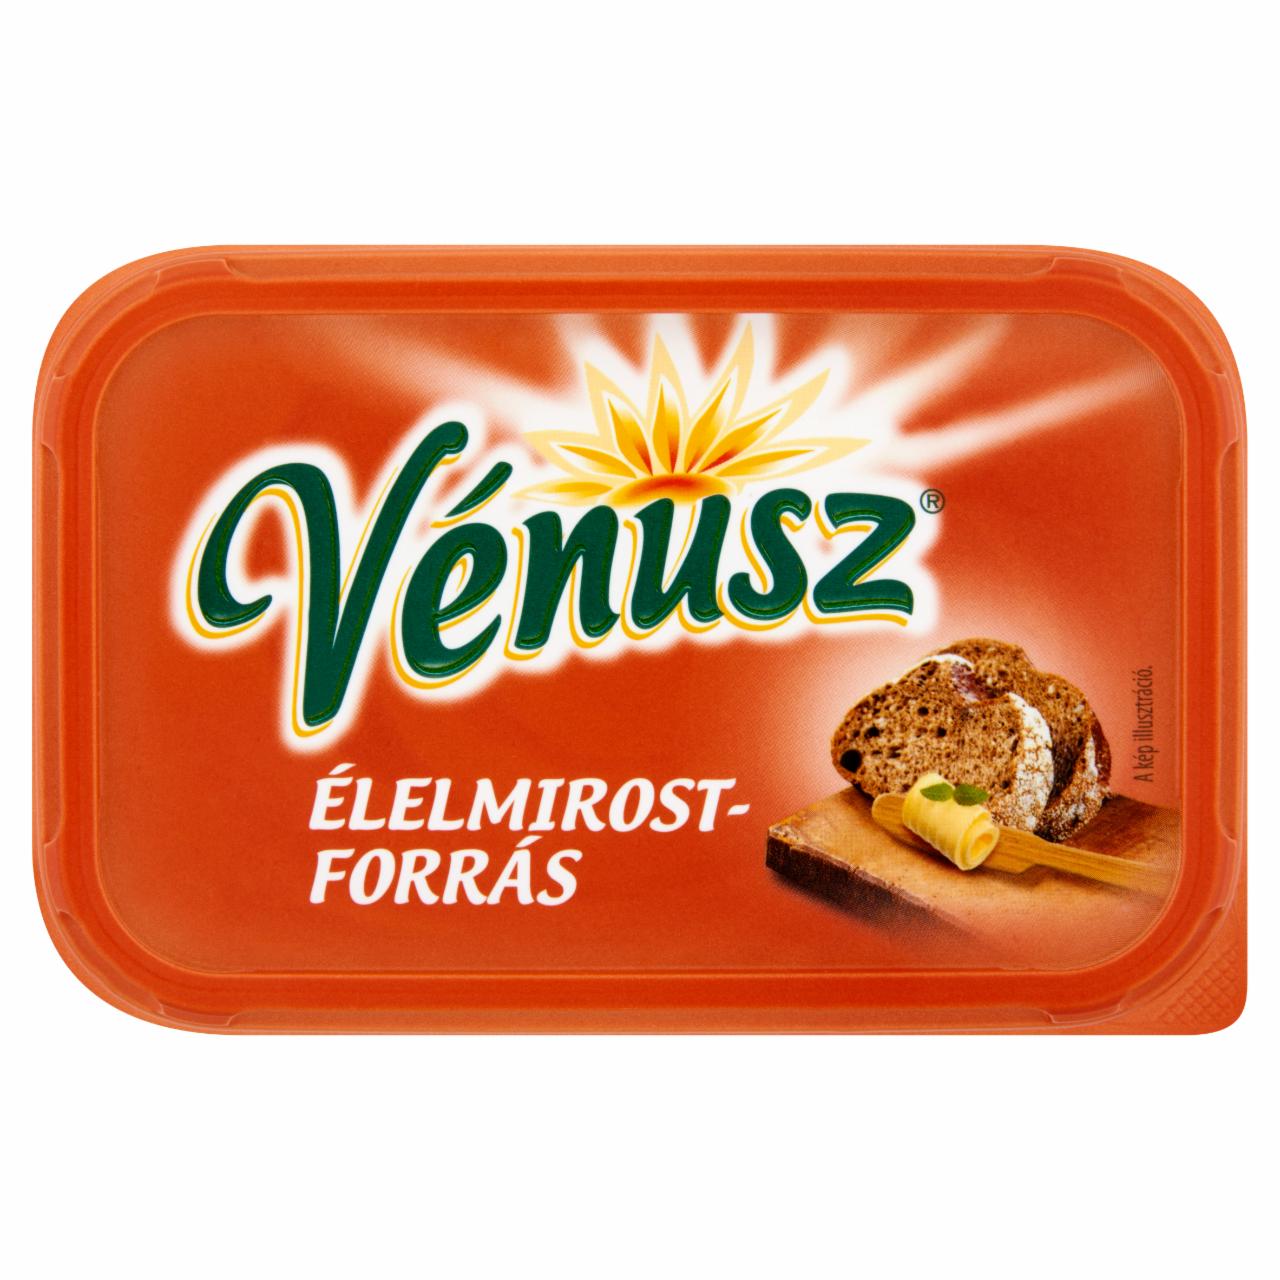 Képek - Vénusz Élelmirost-forrás 32% zsírtartalmú margarin 450 g